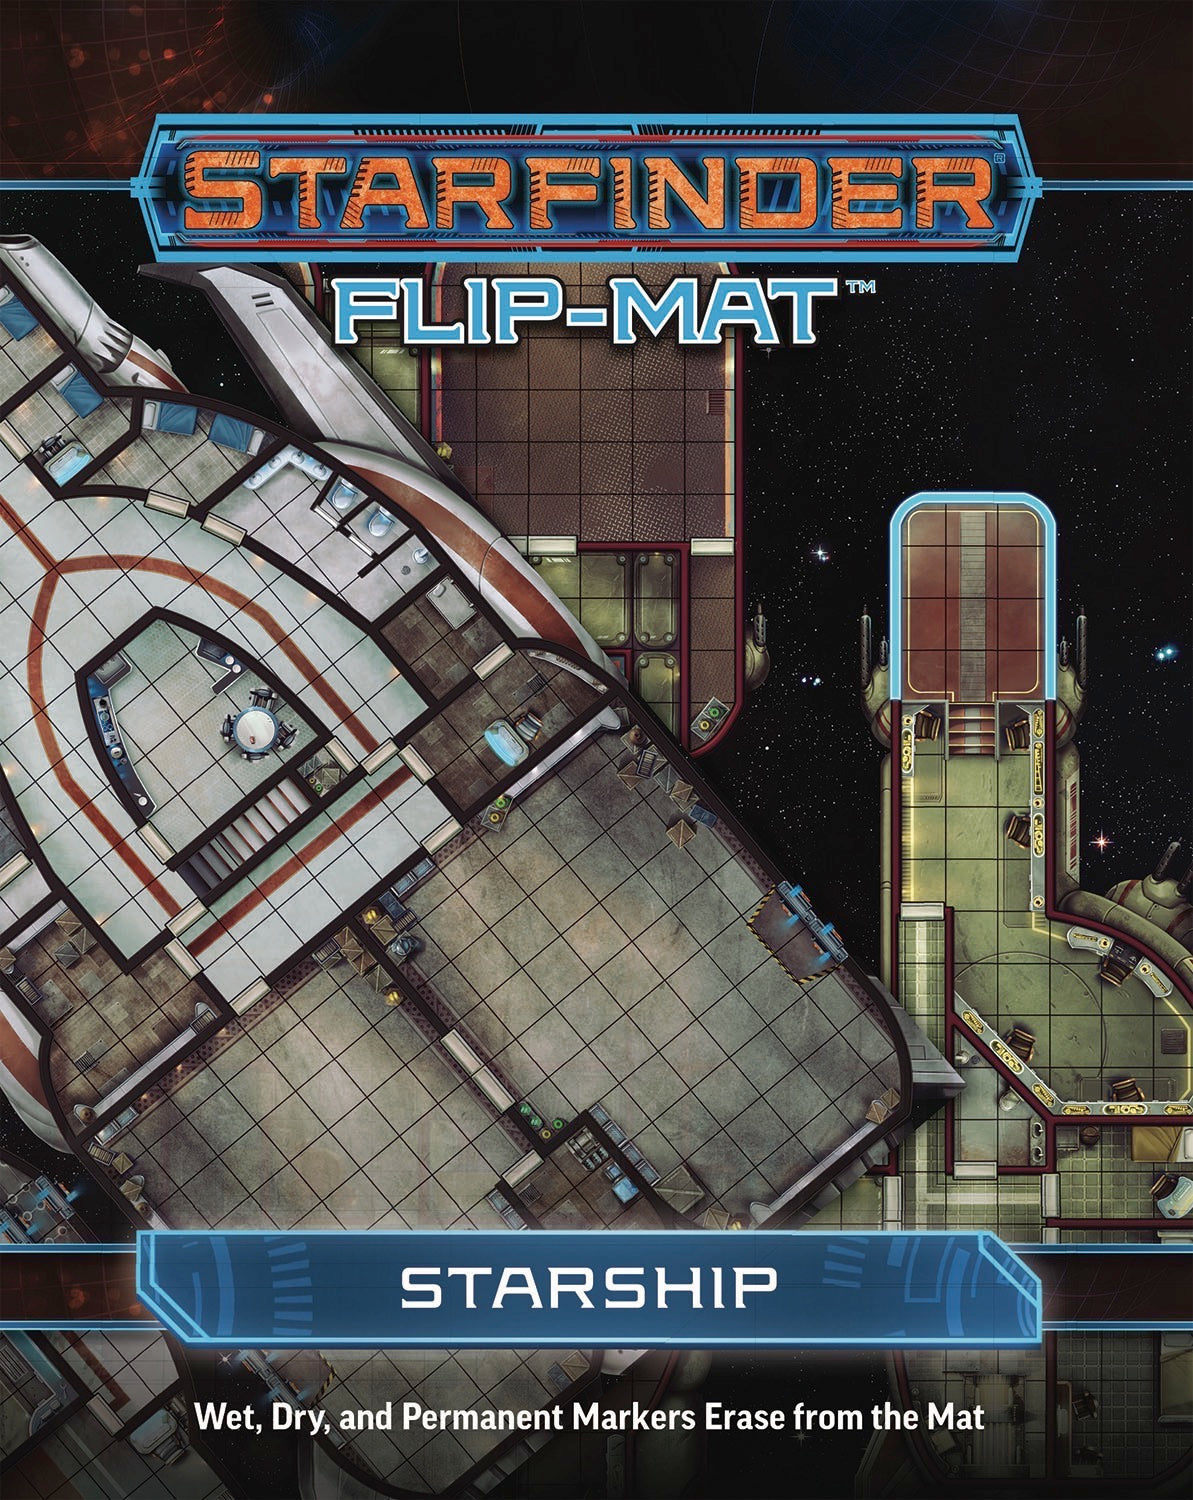 Starfinder RPG: Flip-Mat: Starship Paizo PZO 7304